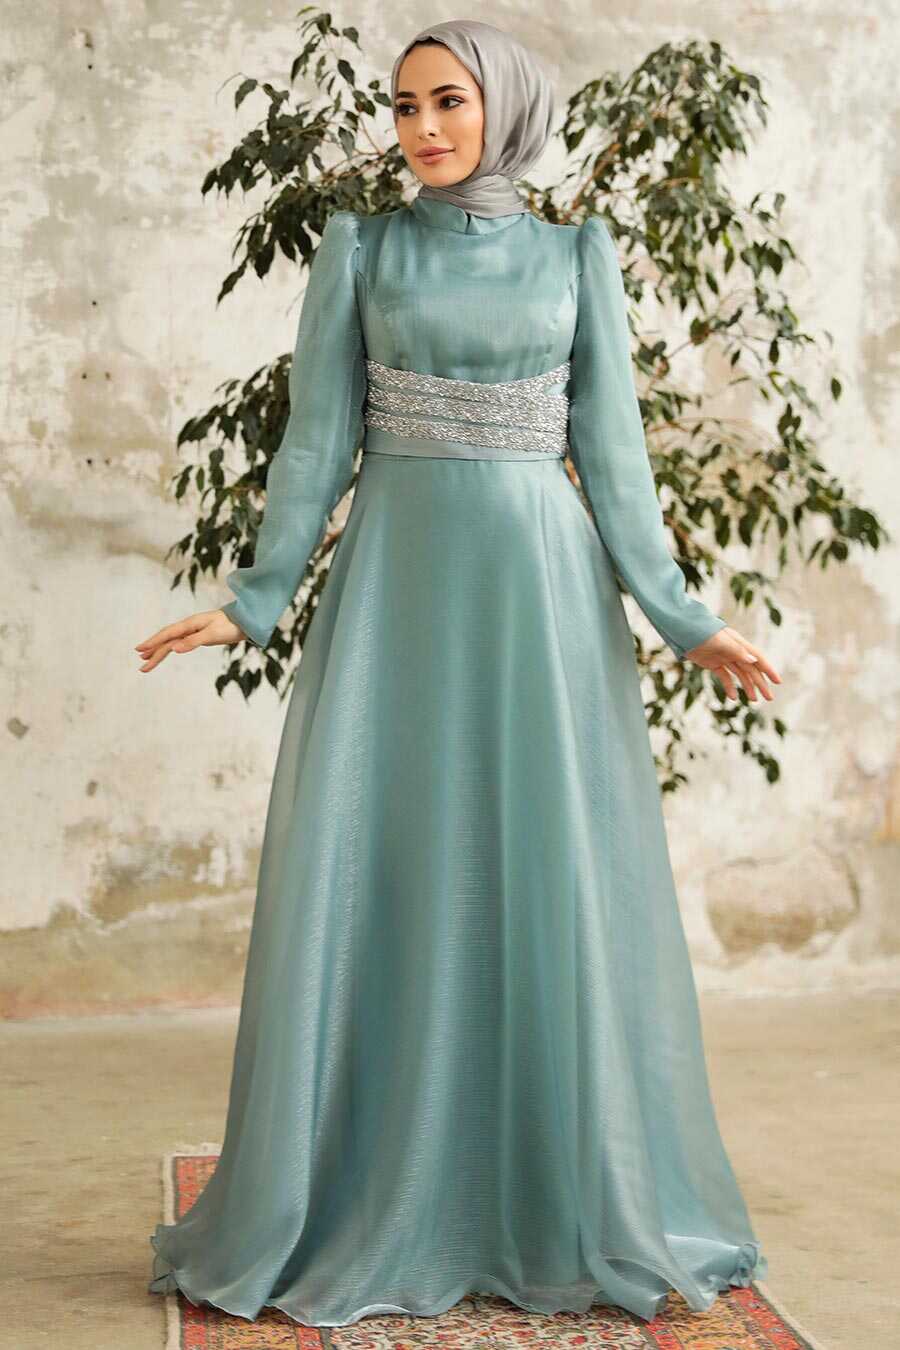 Neva Style - Elegant Turquoise Muslim Fashion Wedding Dress 3812TR